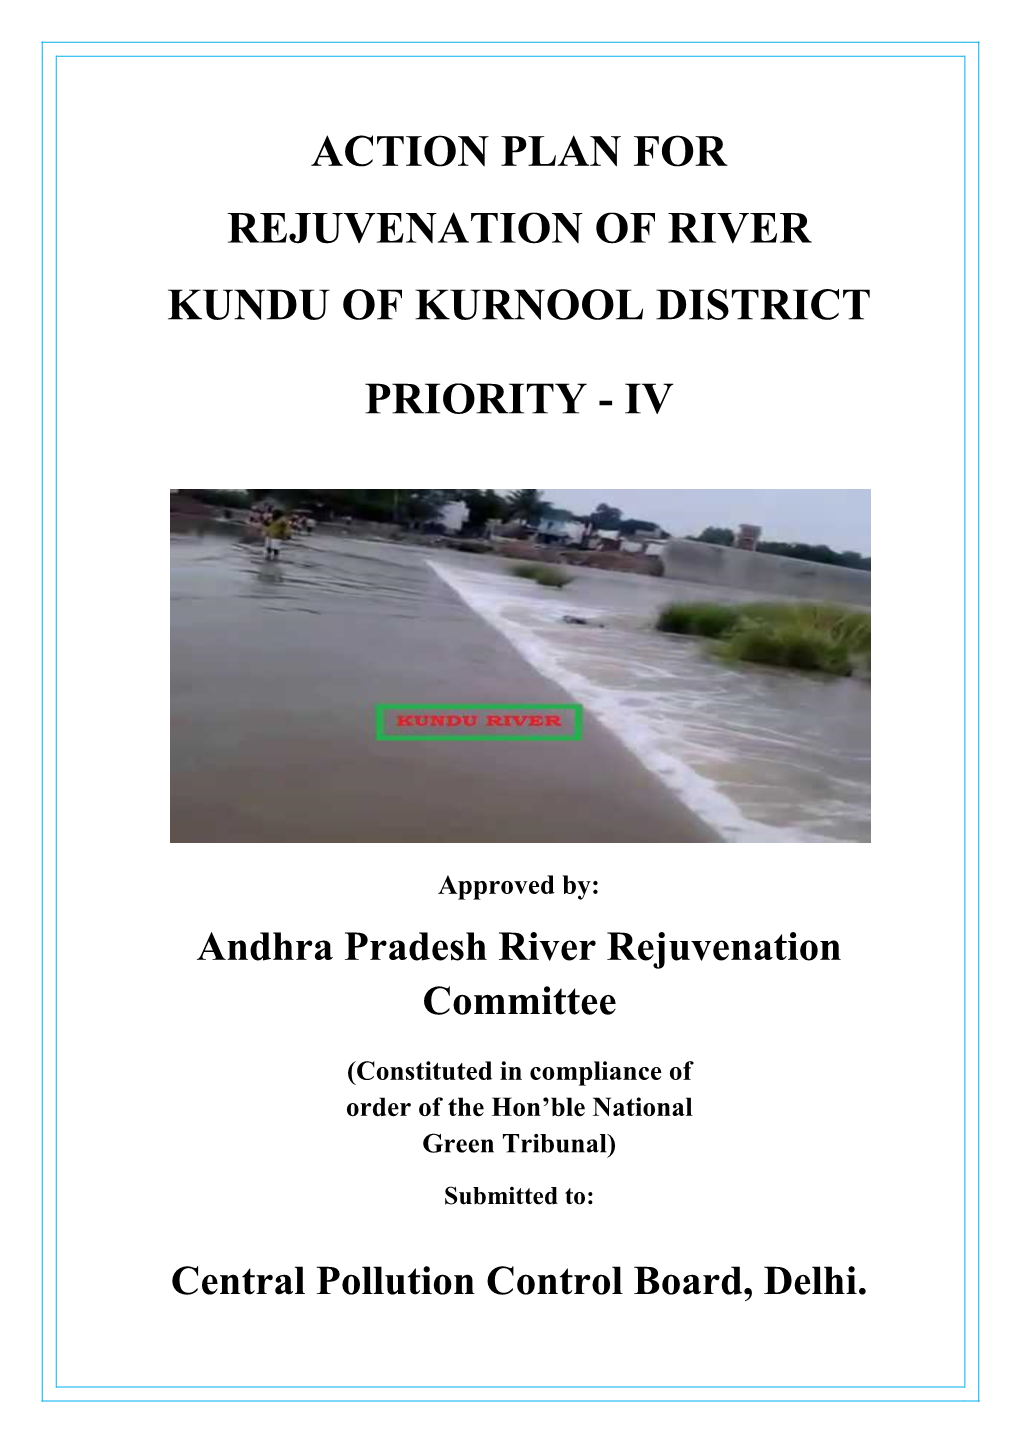 Action Plan for Rejuvenation of River Kundu of Kurnool District